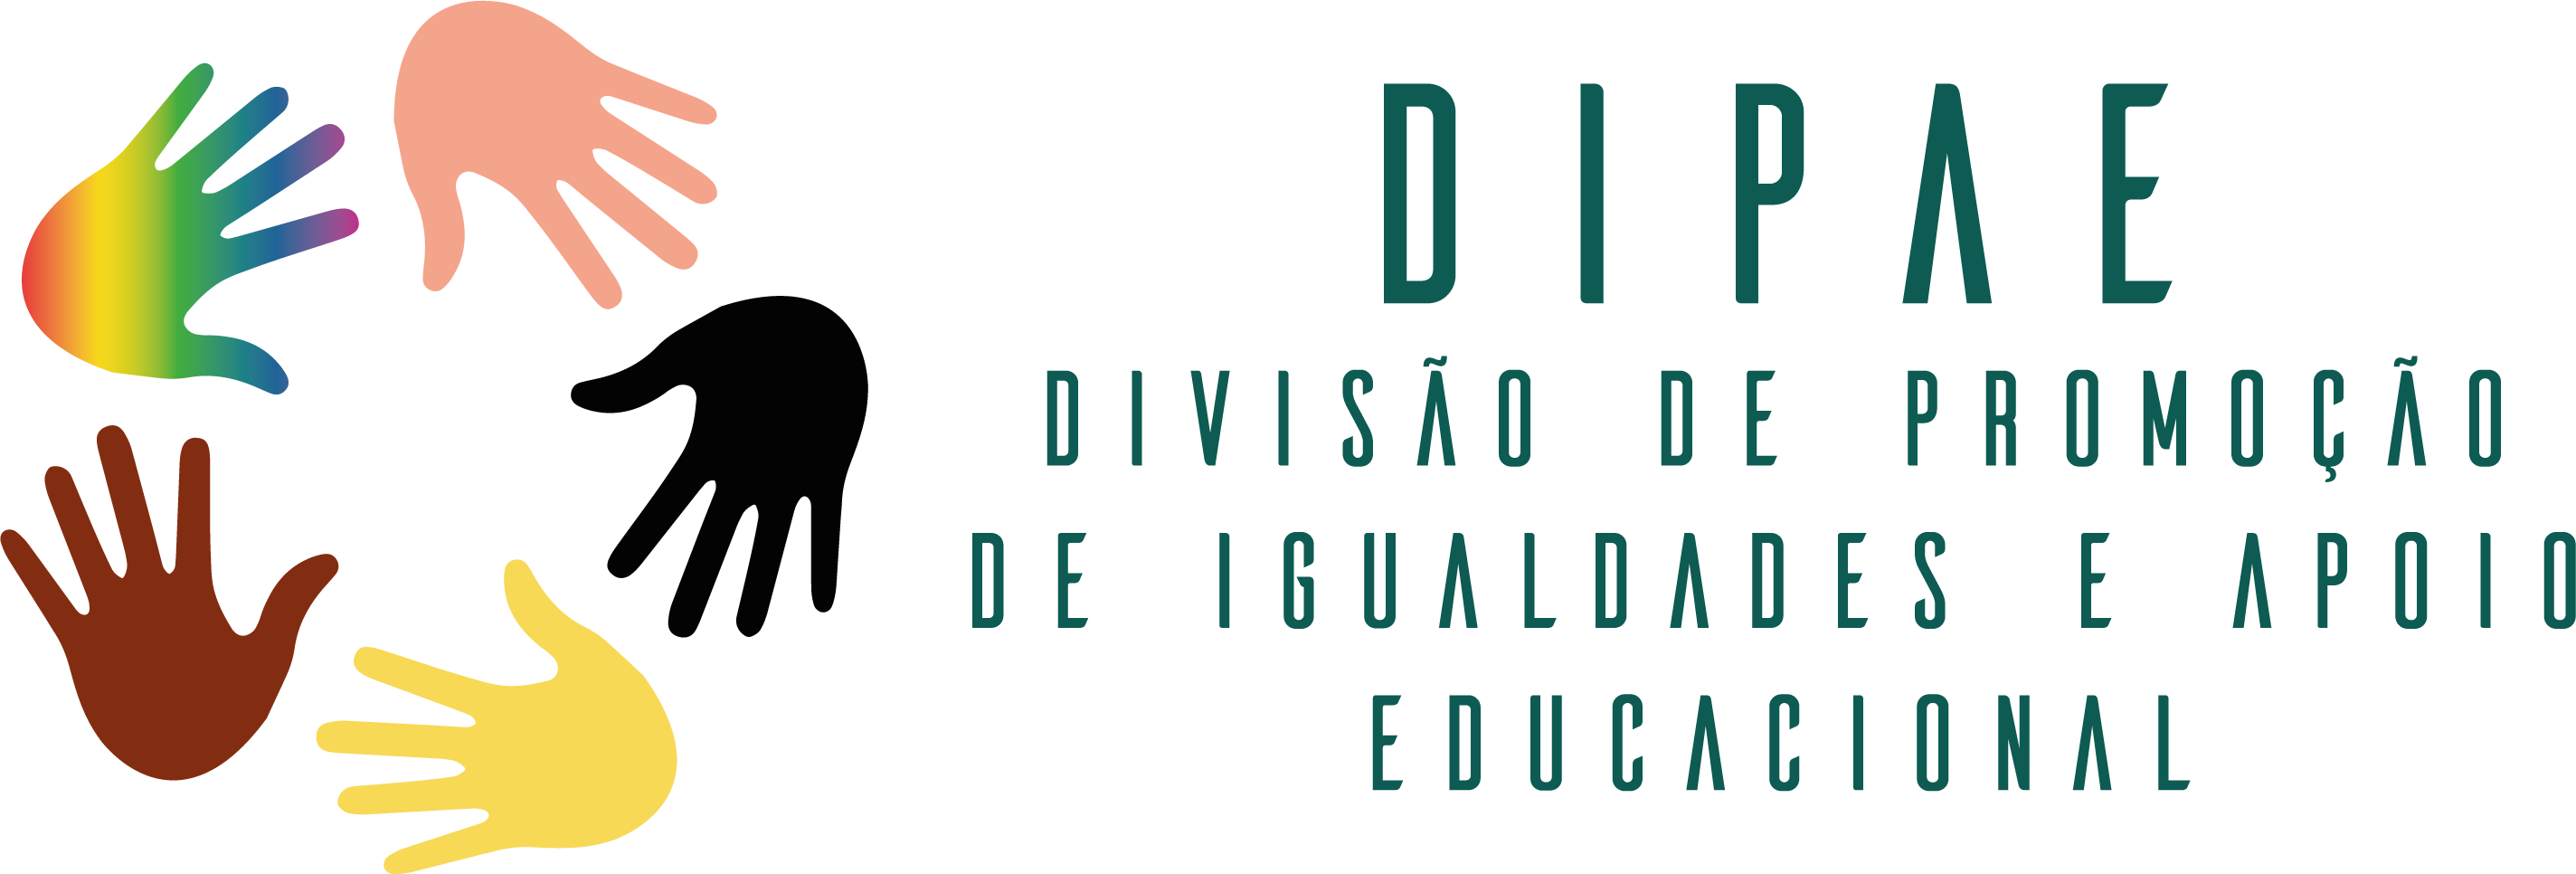 Logotipo da Divisão de Apoio Educacional - DIPAE/UFU